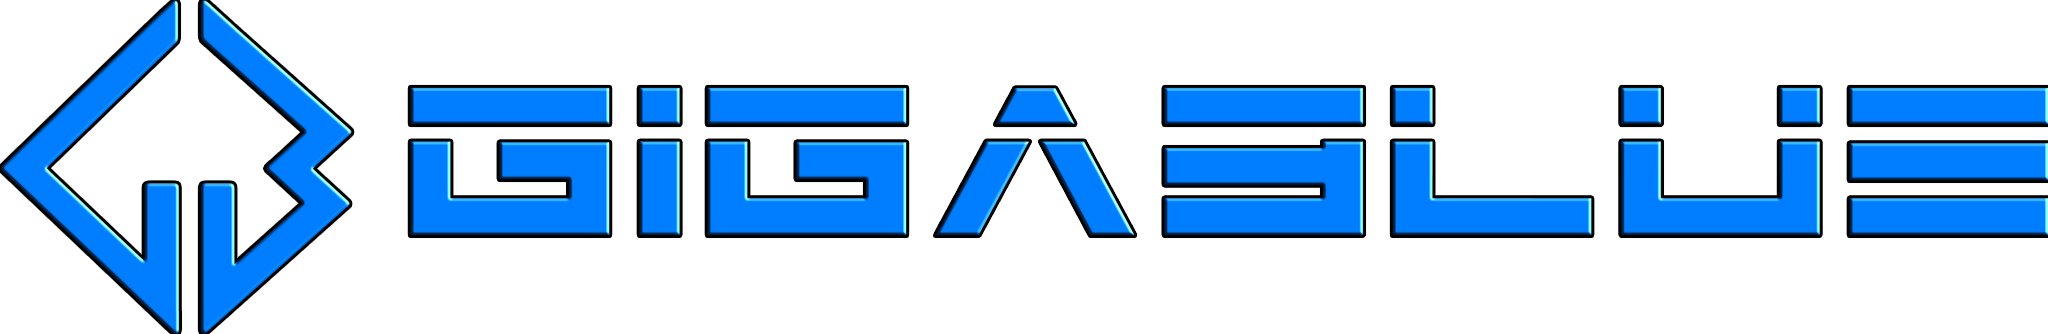 Gigablue-Logo_2014_2